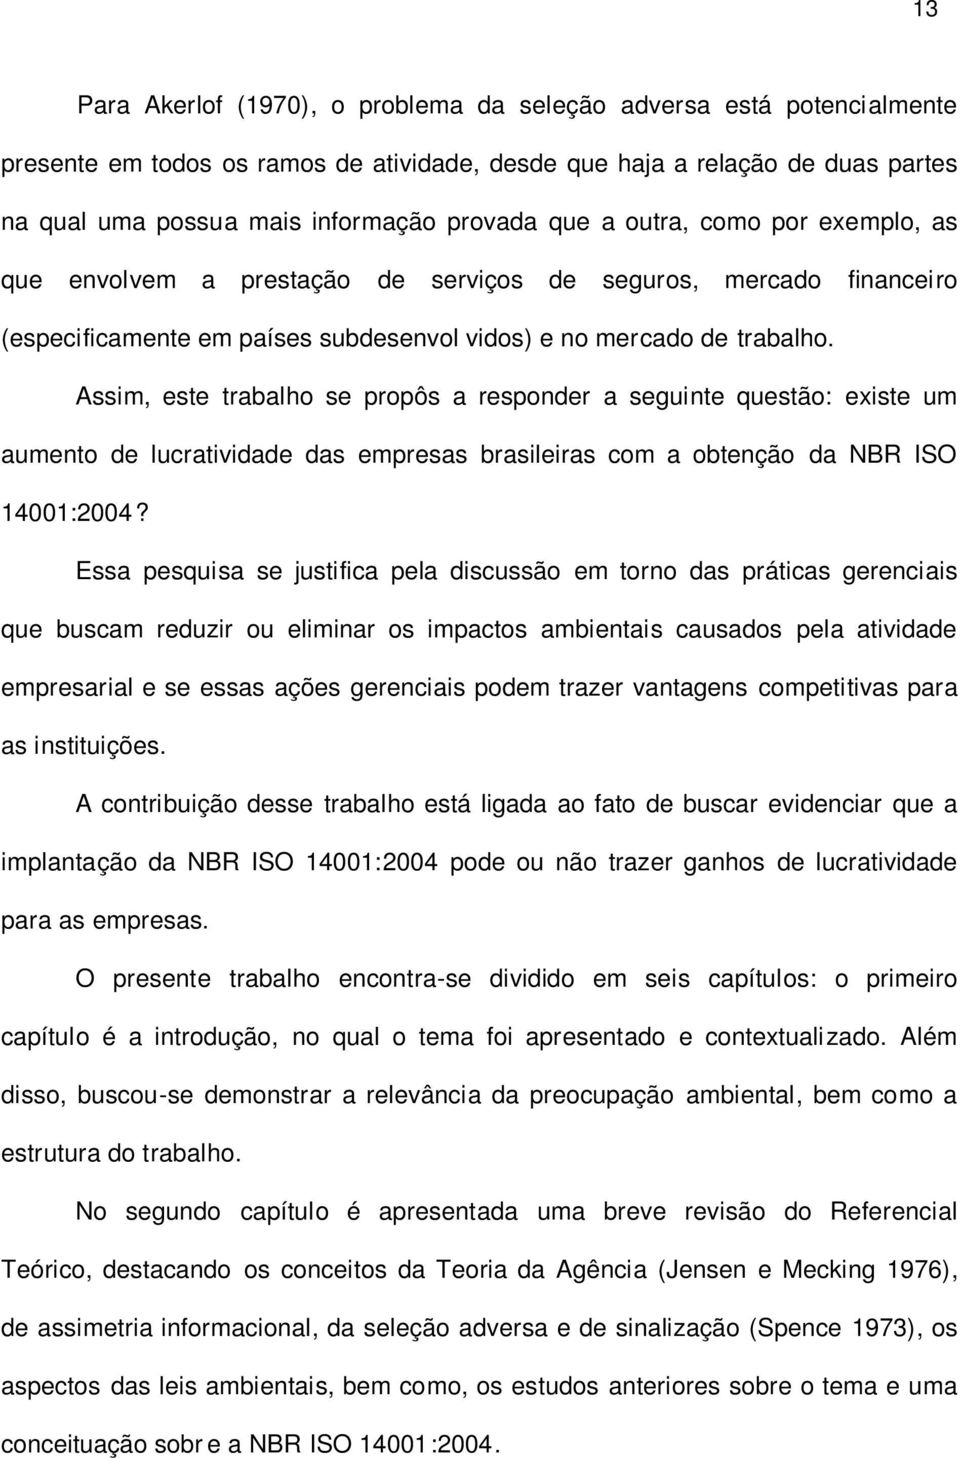 Assim, este trabalho se propôs a responder a seguinte questão: existe um aumento de lucratividade das empresas brasileiras com a obtenção da NBR ISO 14001:2004?